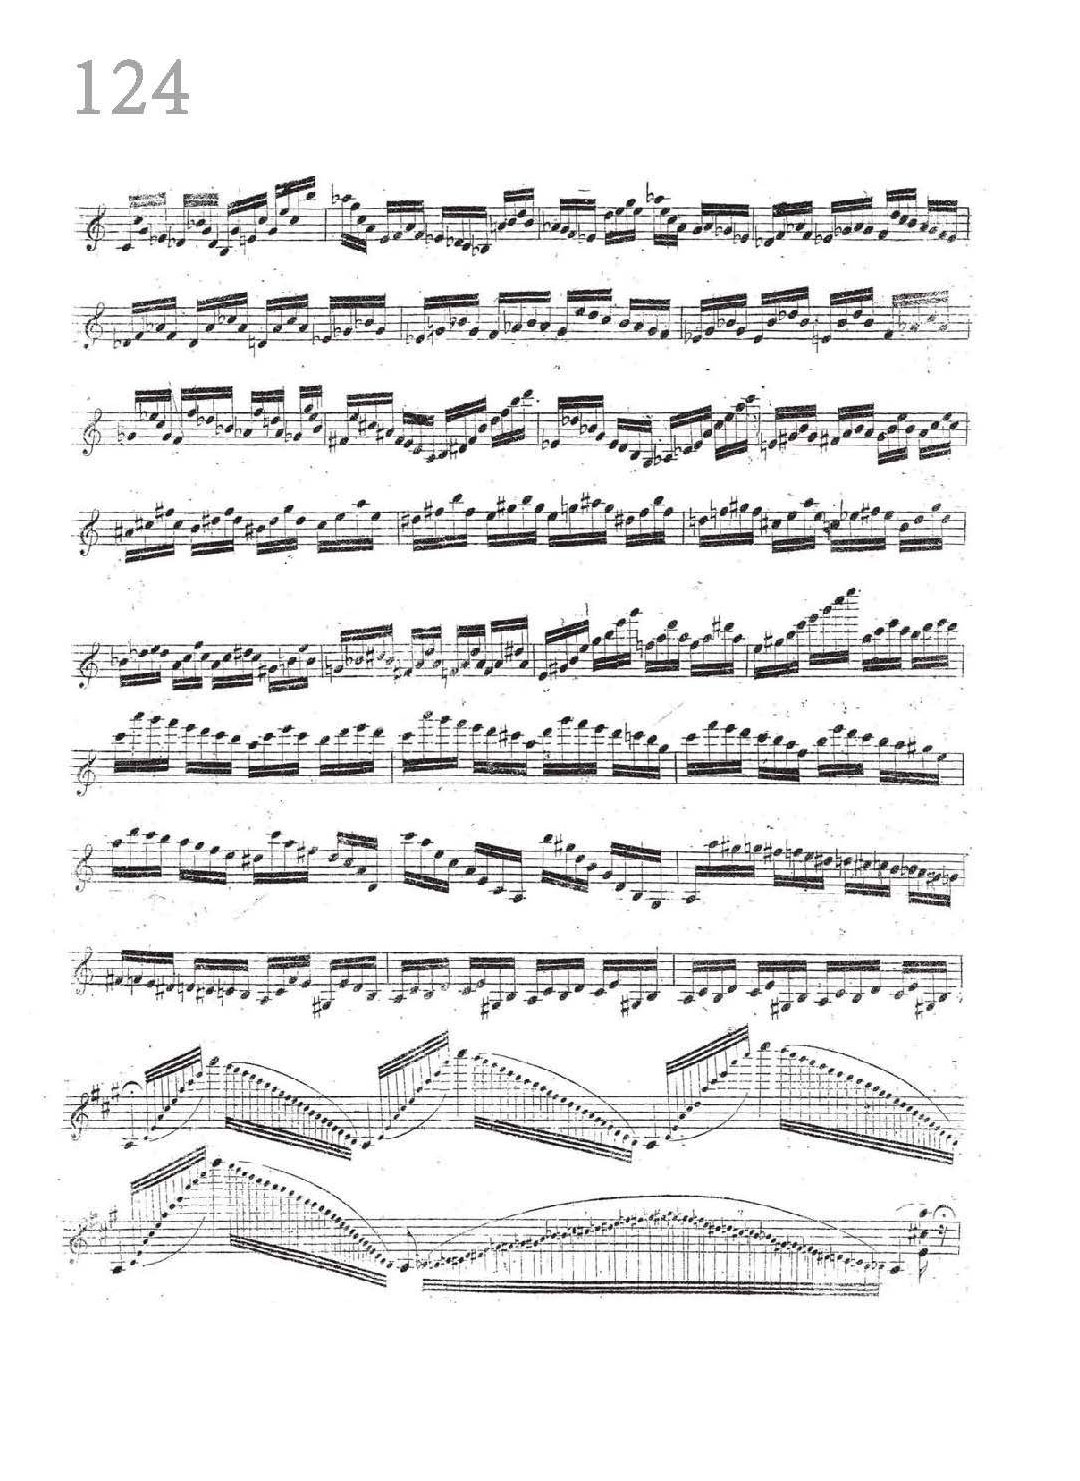 小提琴独奏乐曲谱《Yesterday/Music》戴维嘉雷特